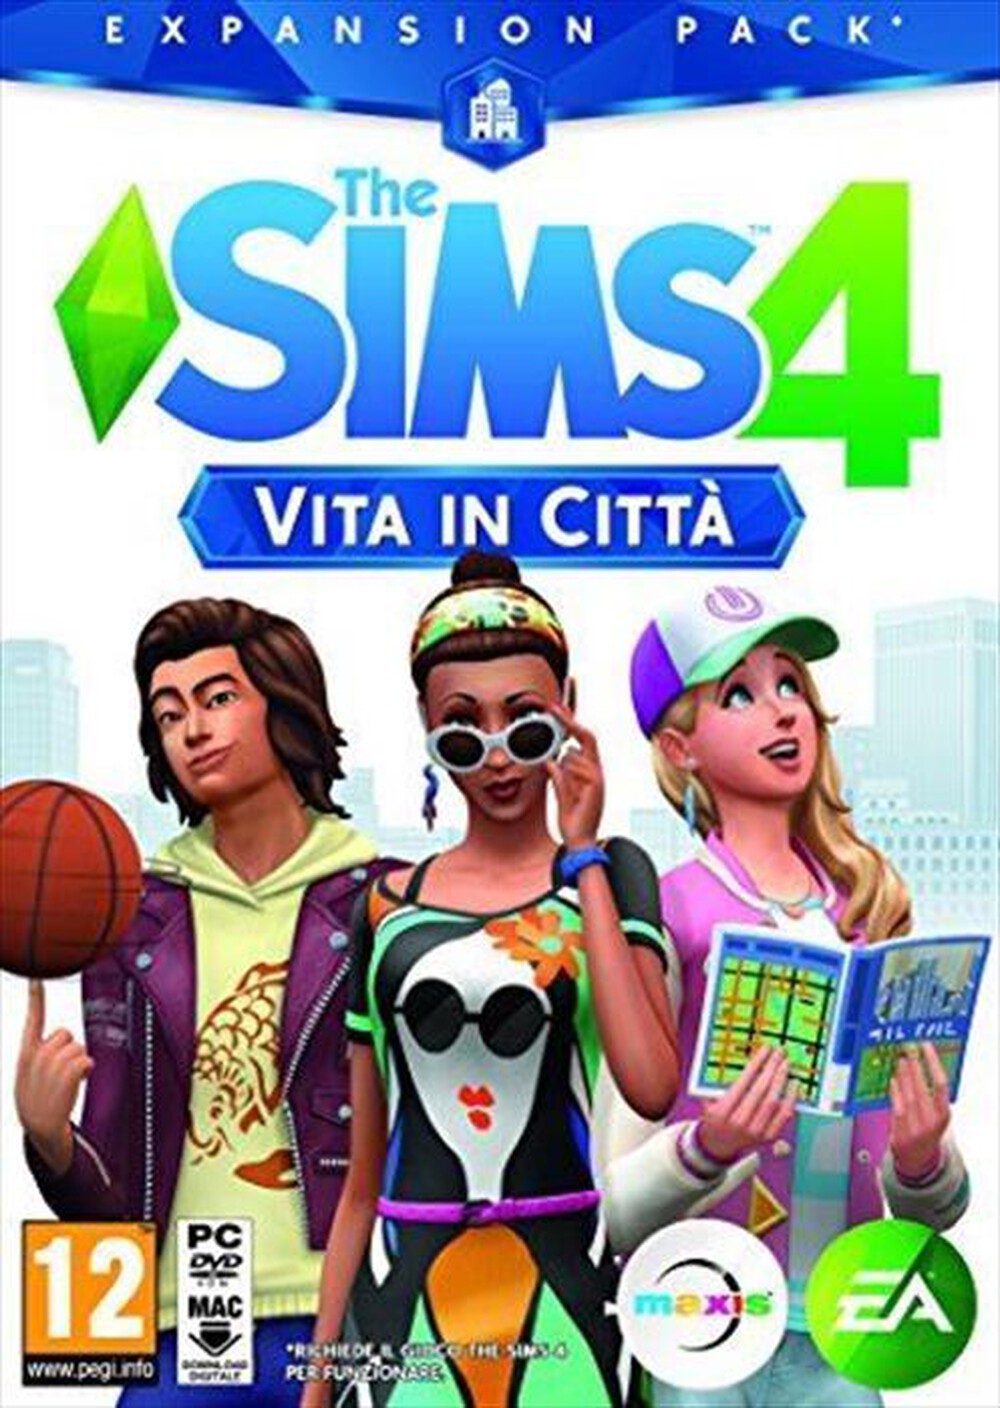 "ELECTRONIC ARTS - The Sims 4 Vita in città ESPANSIONE PC"